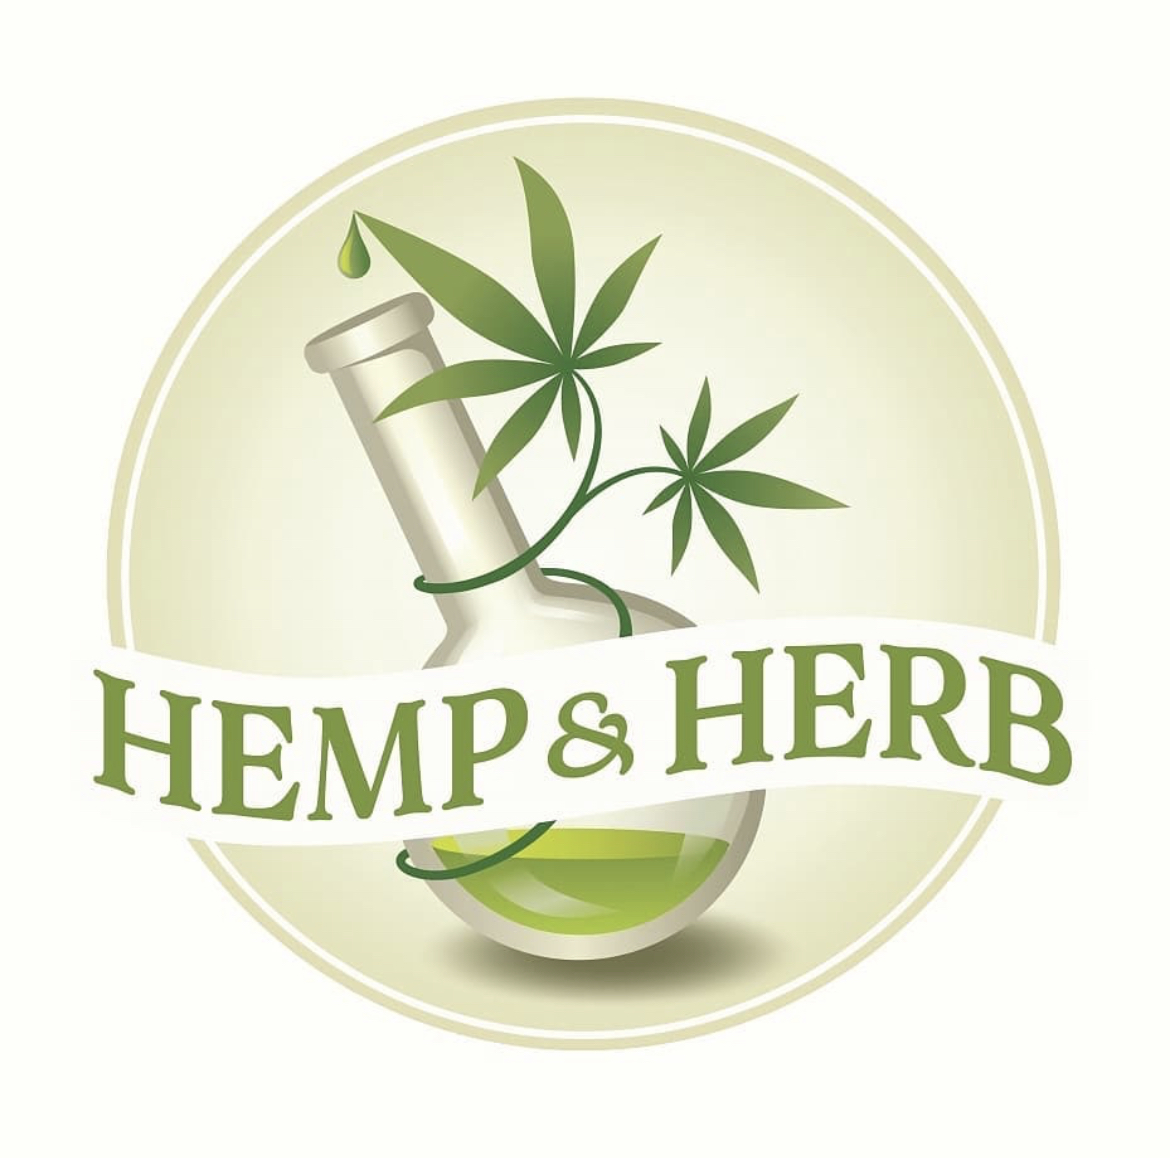 hemp & herb logo